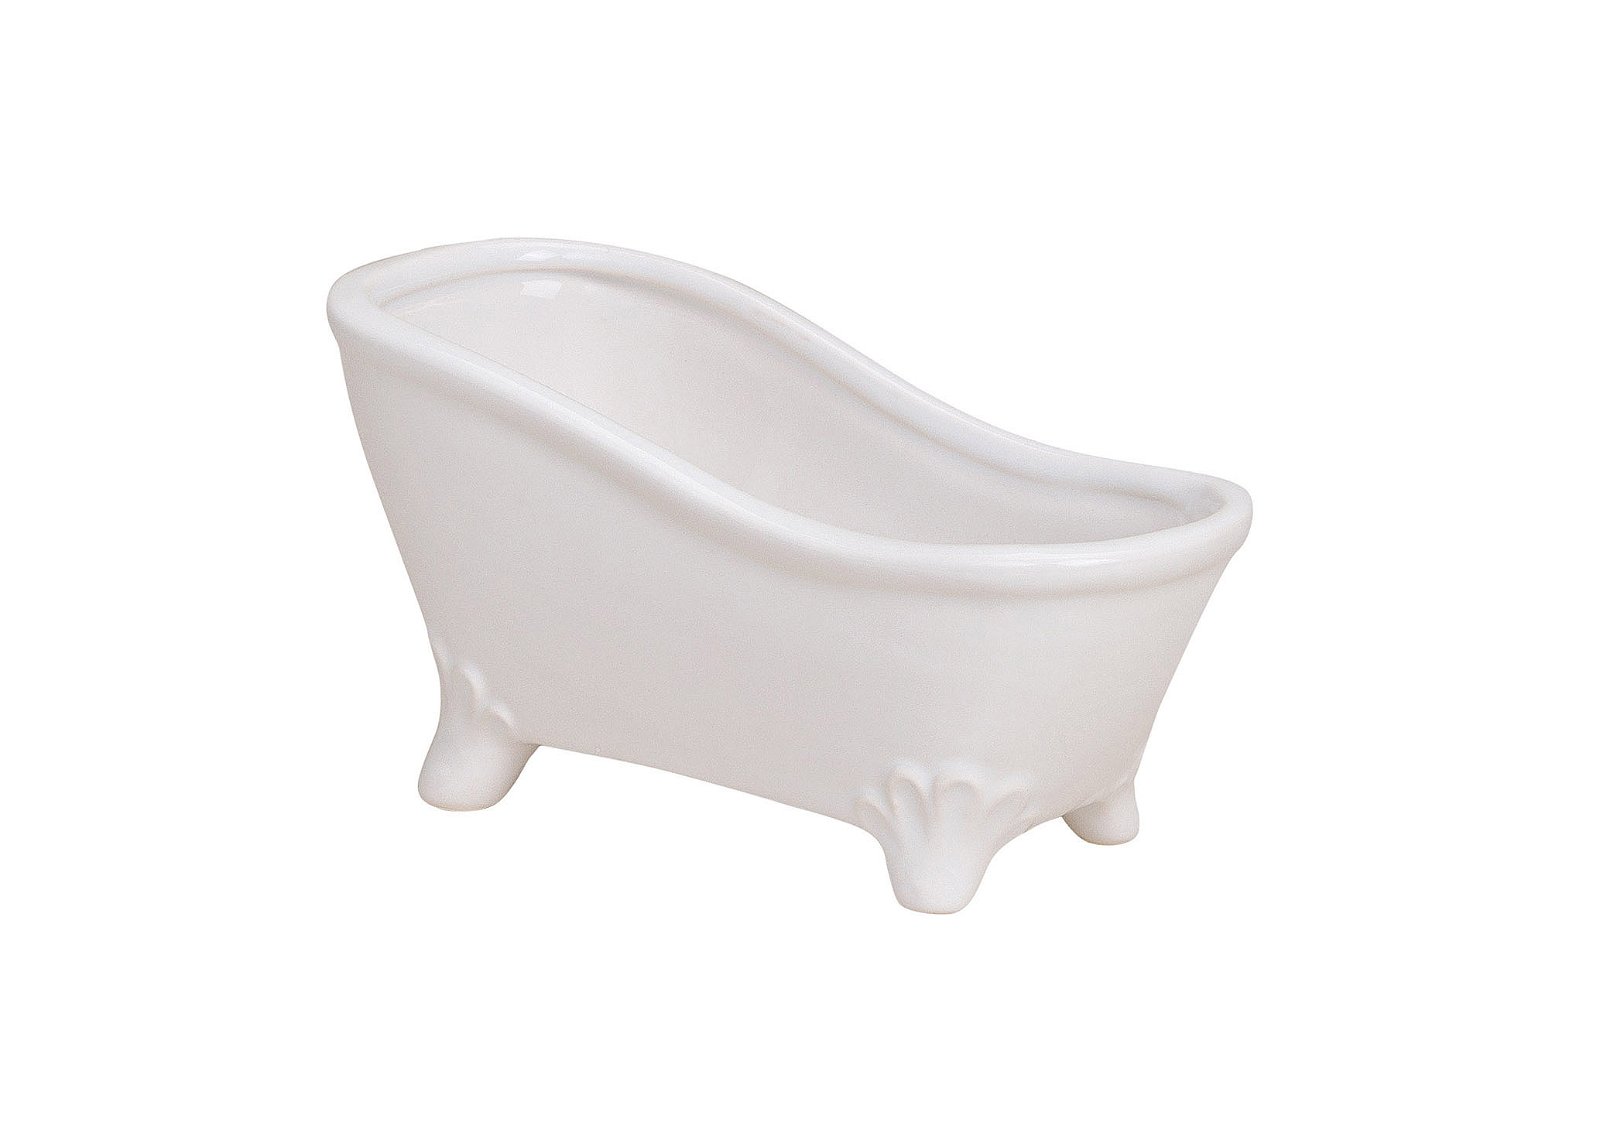 Vasca da bagno, ceramica bianca, L16 x P7 x H9 cm